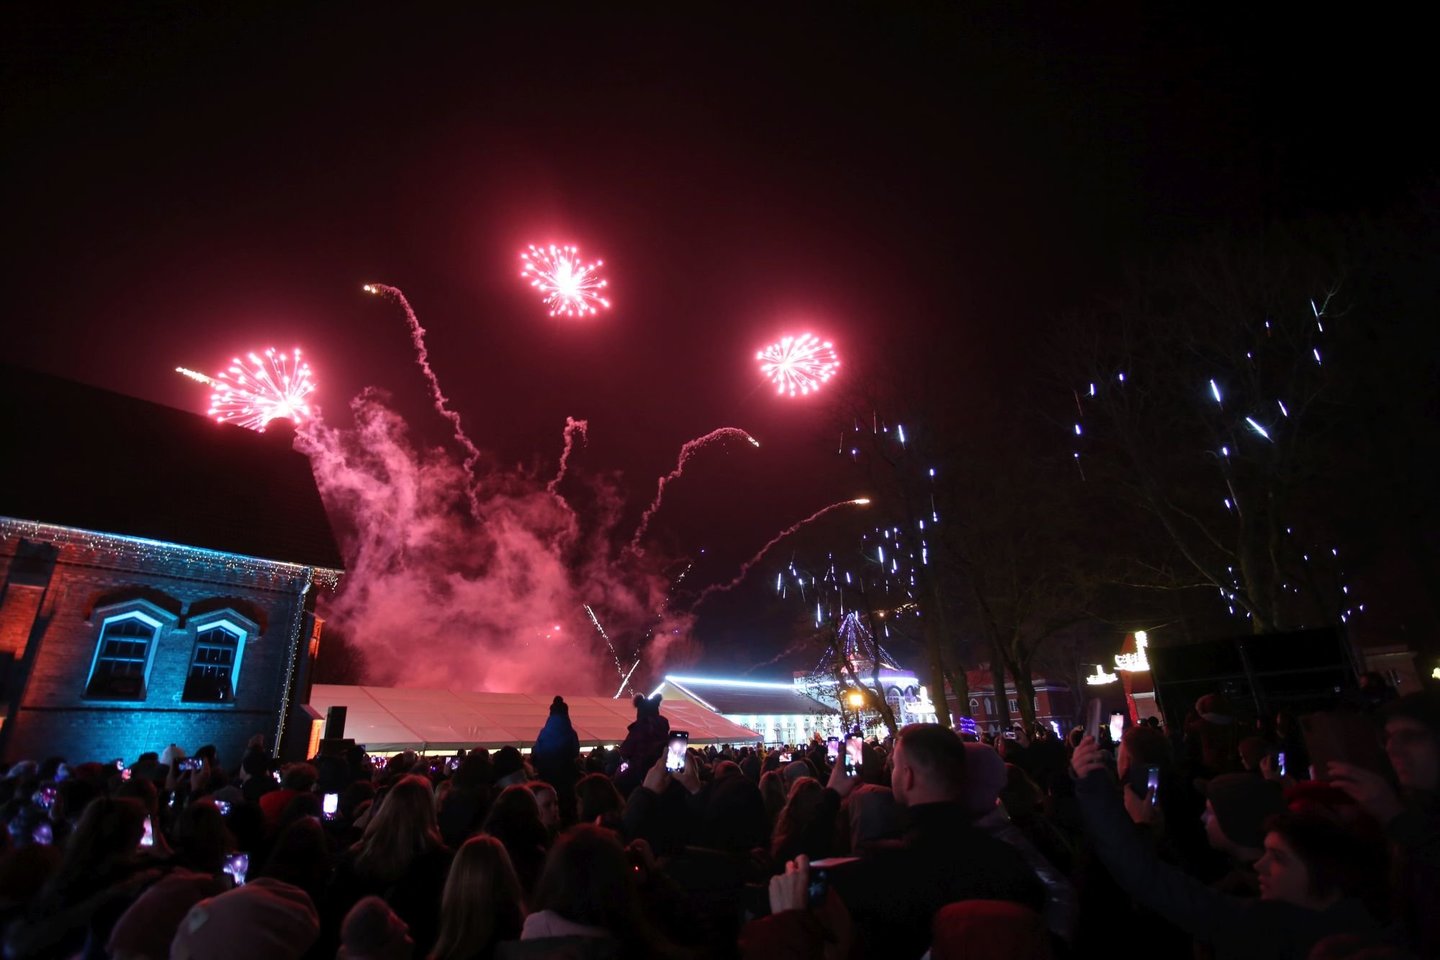 Penktadienio vakarą Raudondvaryje surengta įspūdinga šventė - įžiebta pagrindinė Kauno rajono eglė.<br> M.Patašiaus nuotr.